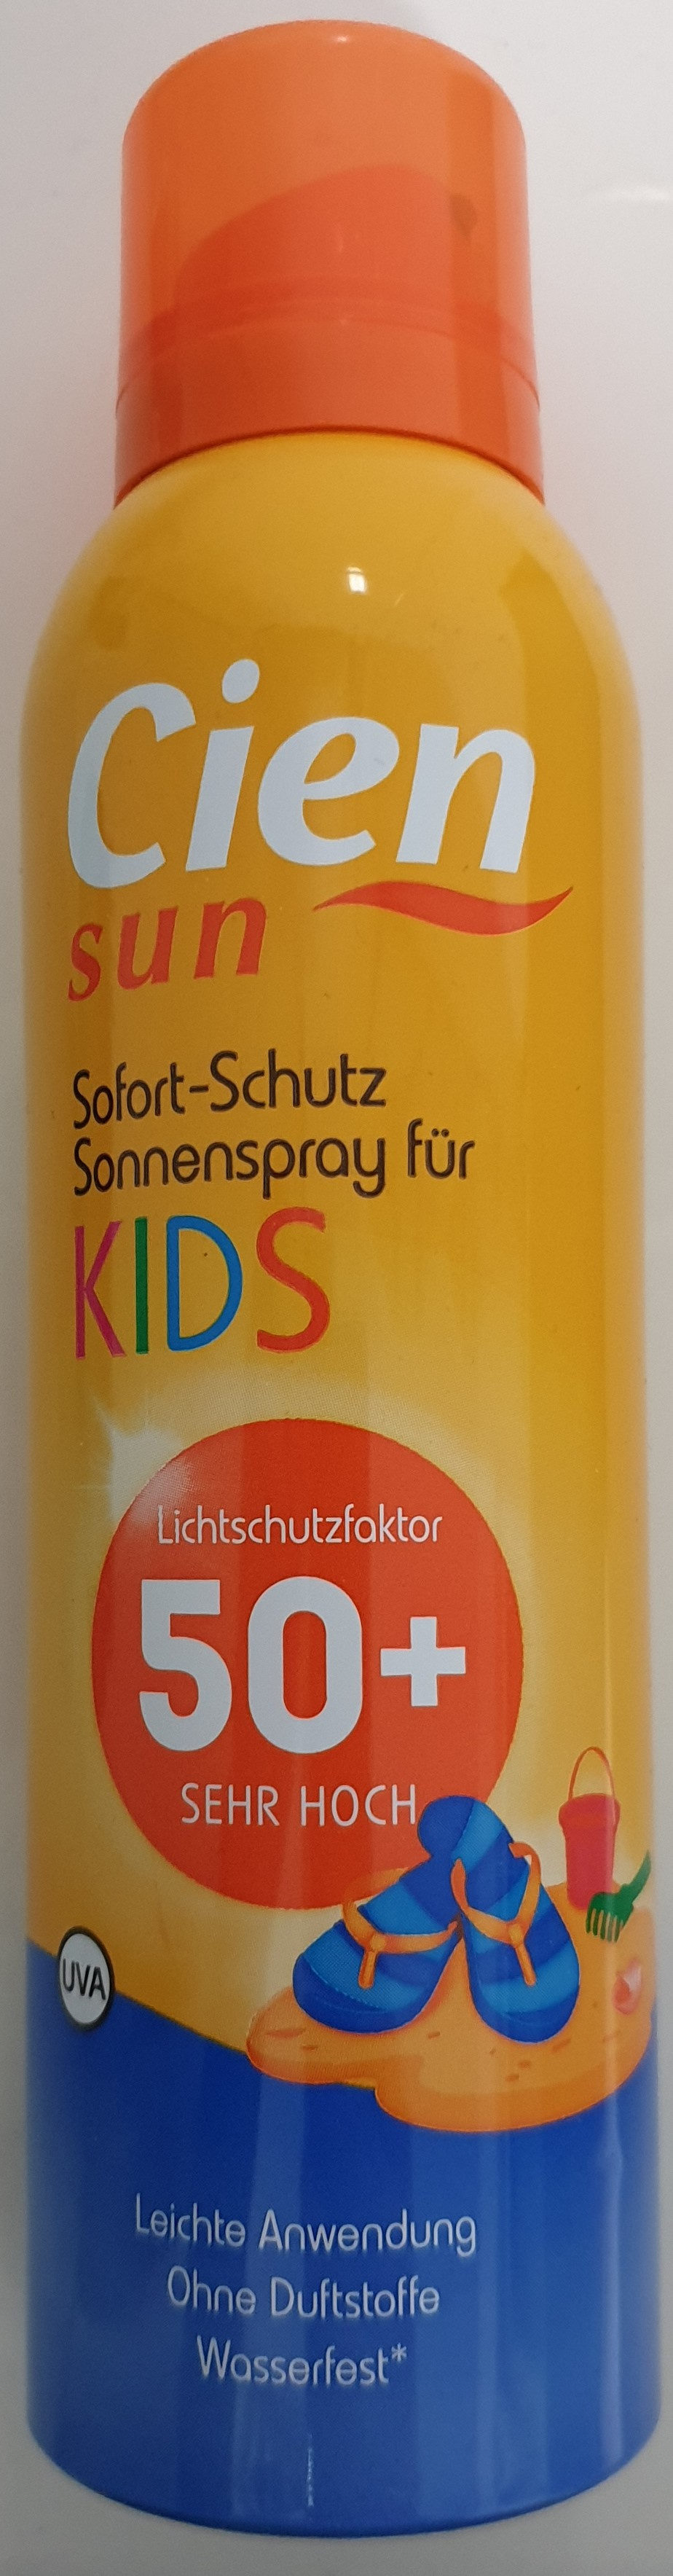 Sofort-Schutz Sonnenspray für Kids 50+ - Produto - de